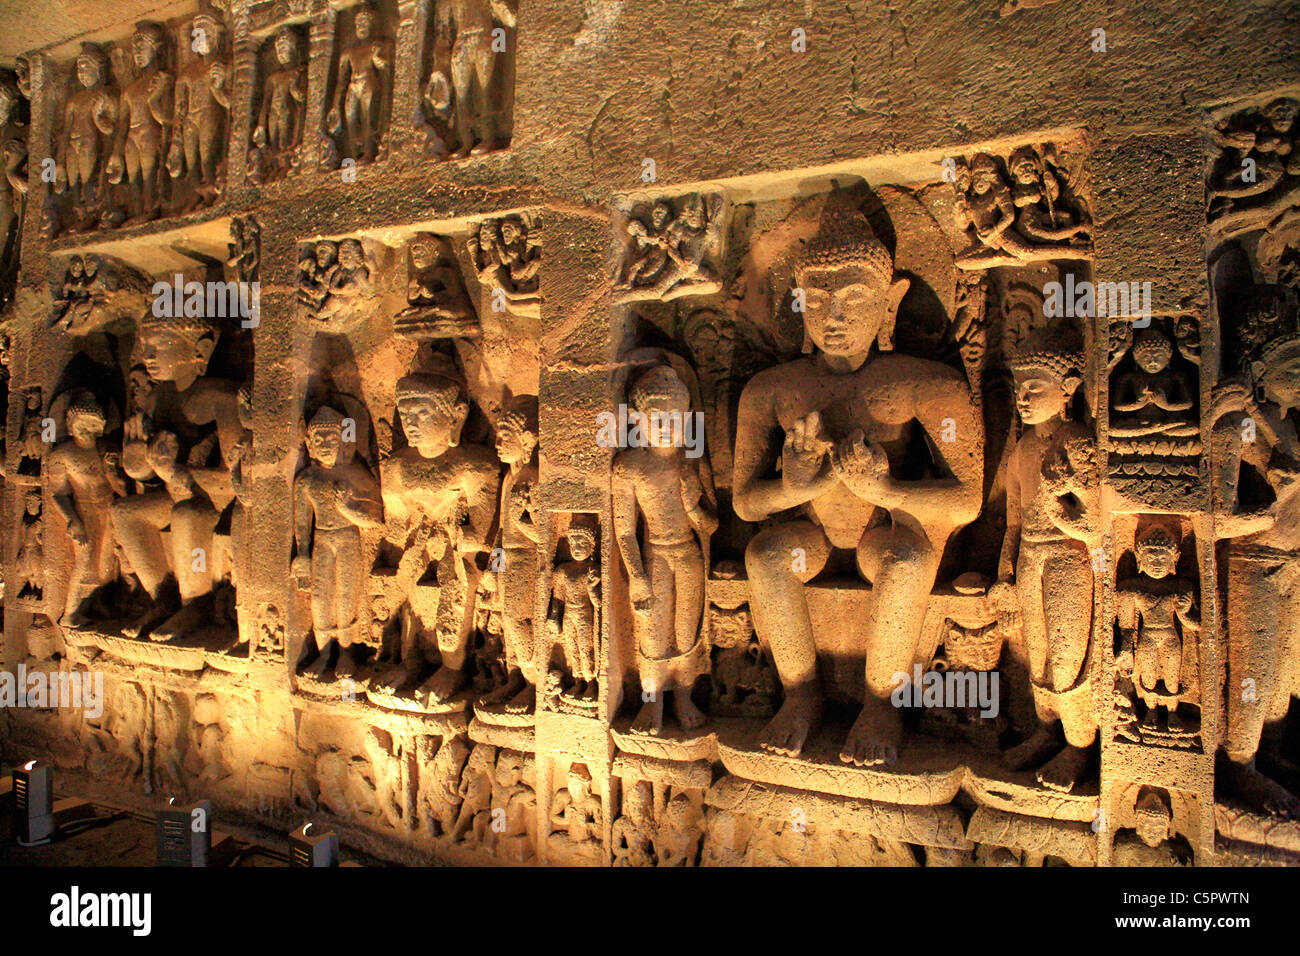 Grotte, monastero buddista (V secolo), il sito Patrimonio Mondiale dell'UNESCO, Ajanta, India Foto Stock